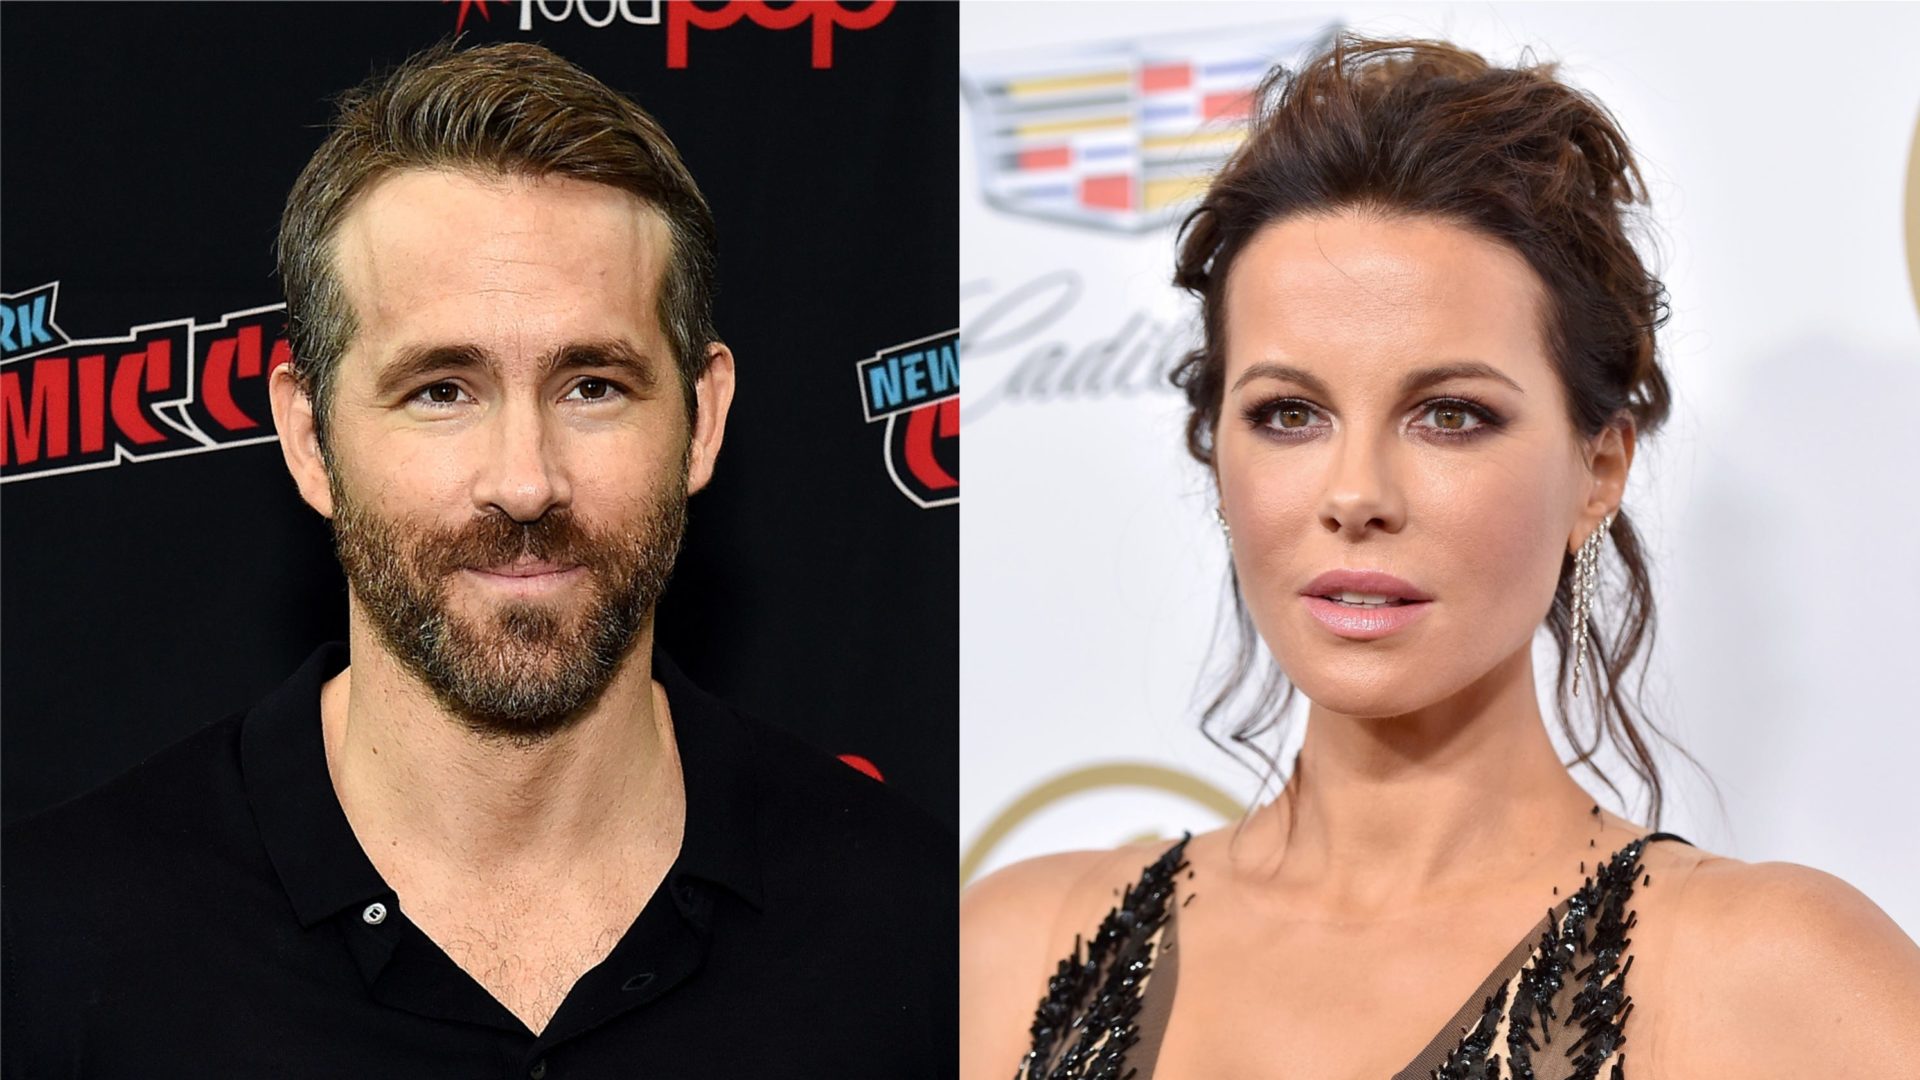 Kate Beckinsale revela motivo inusitado para recusar trabalhos com Ryan Reynolds